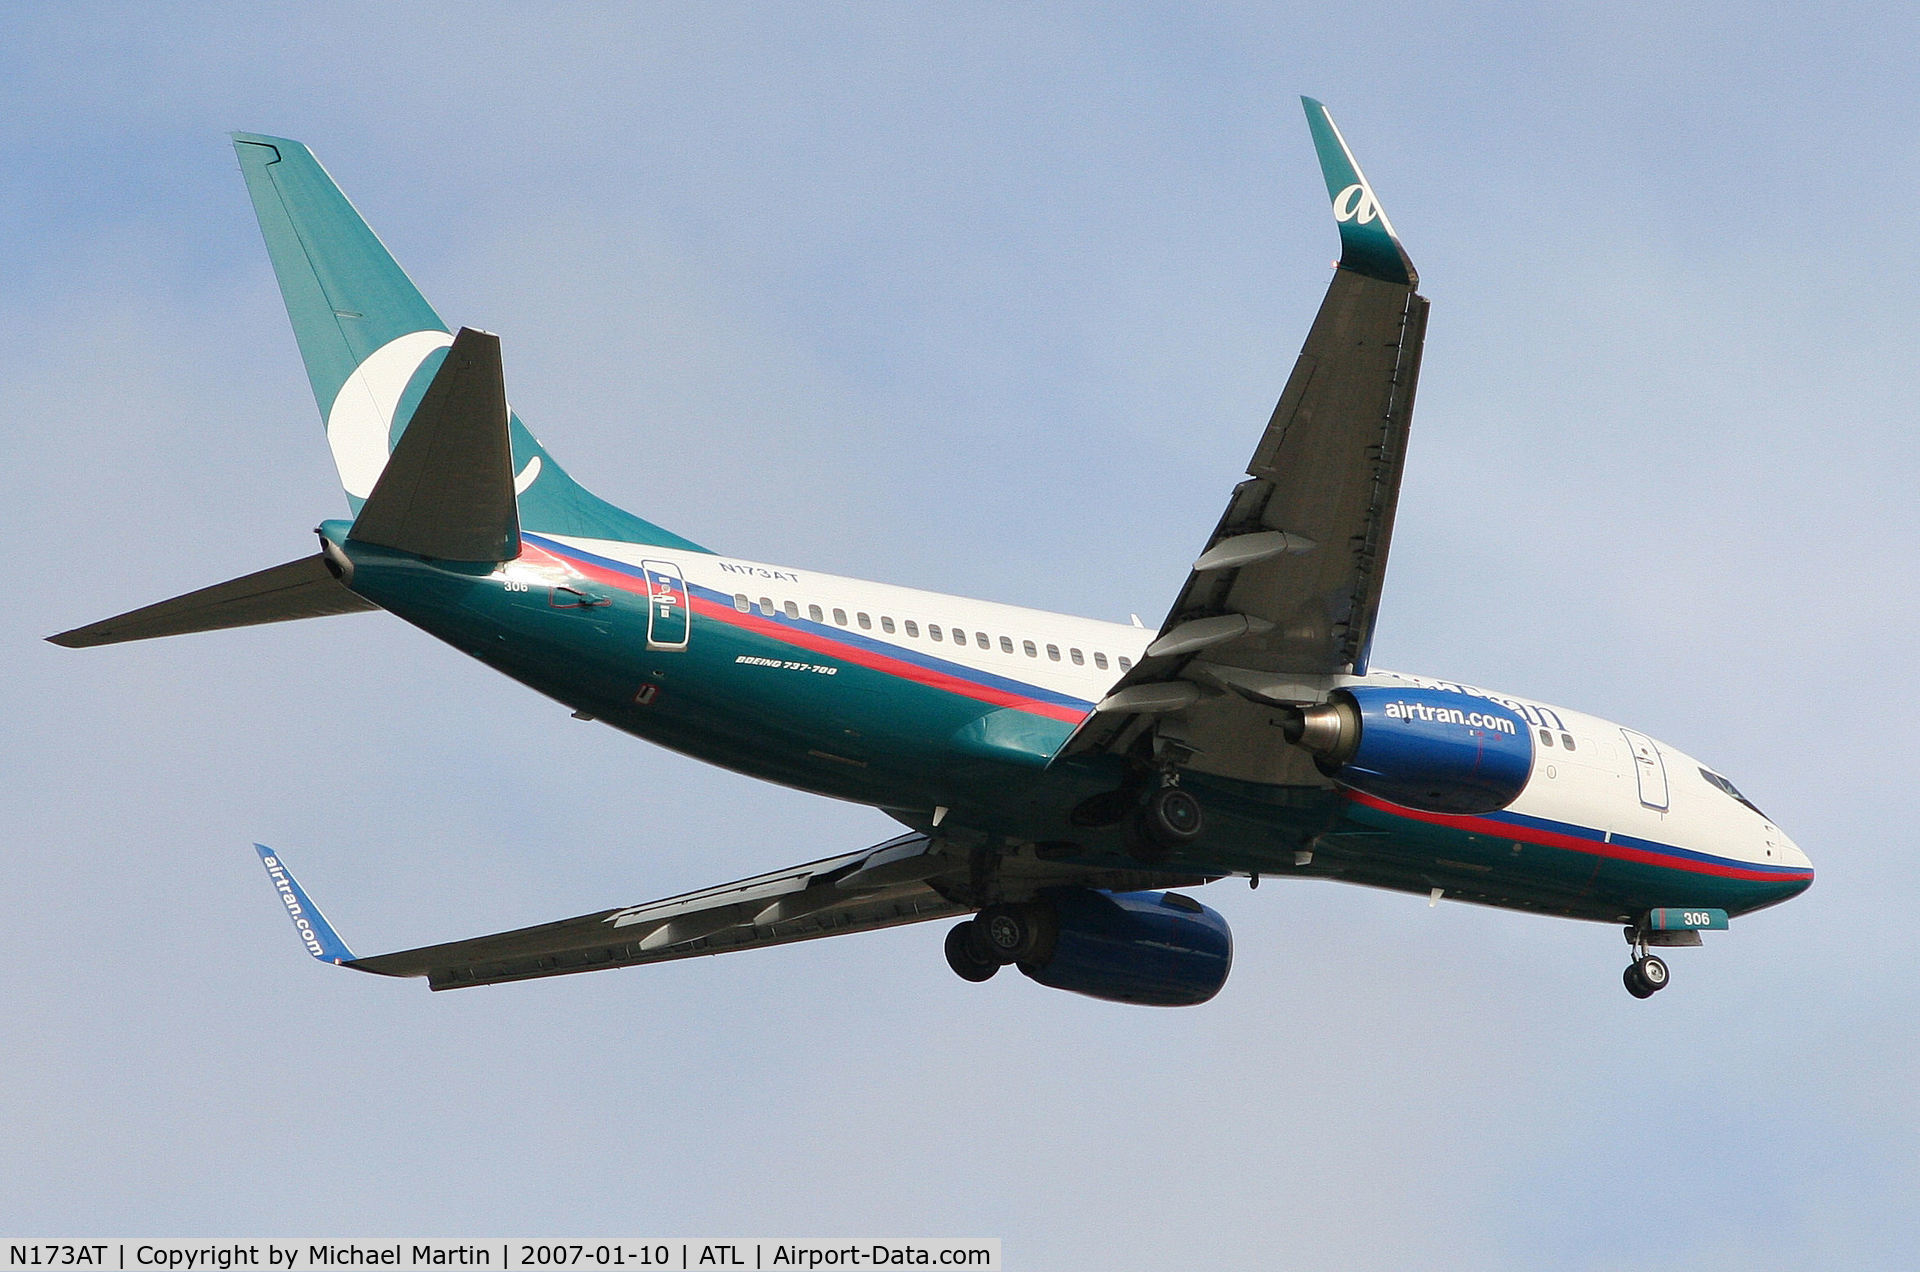 N173AT, 2004 Boeing 737-76N C/N 32661, Over the numbers of 9R